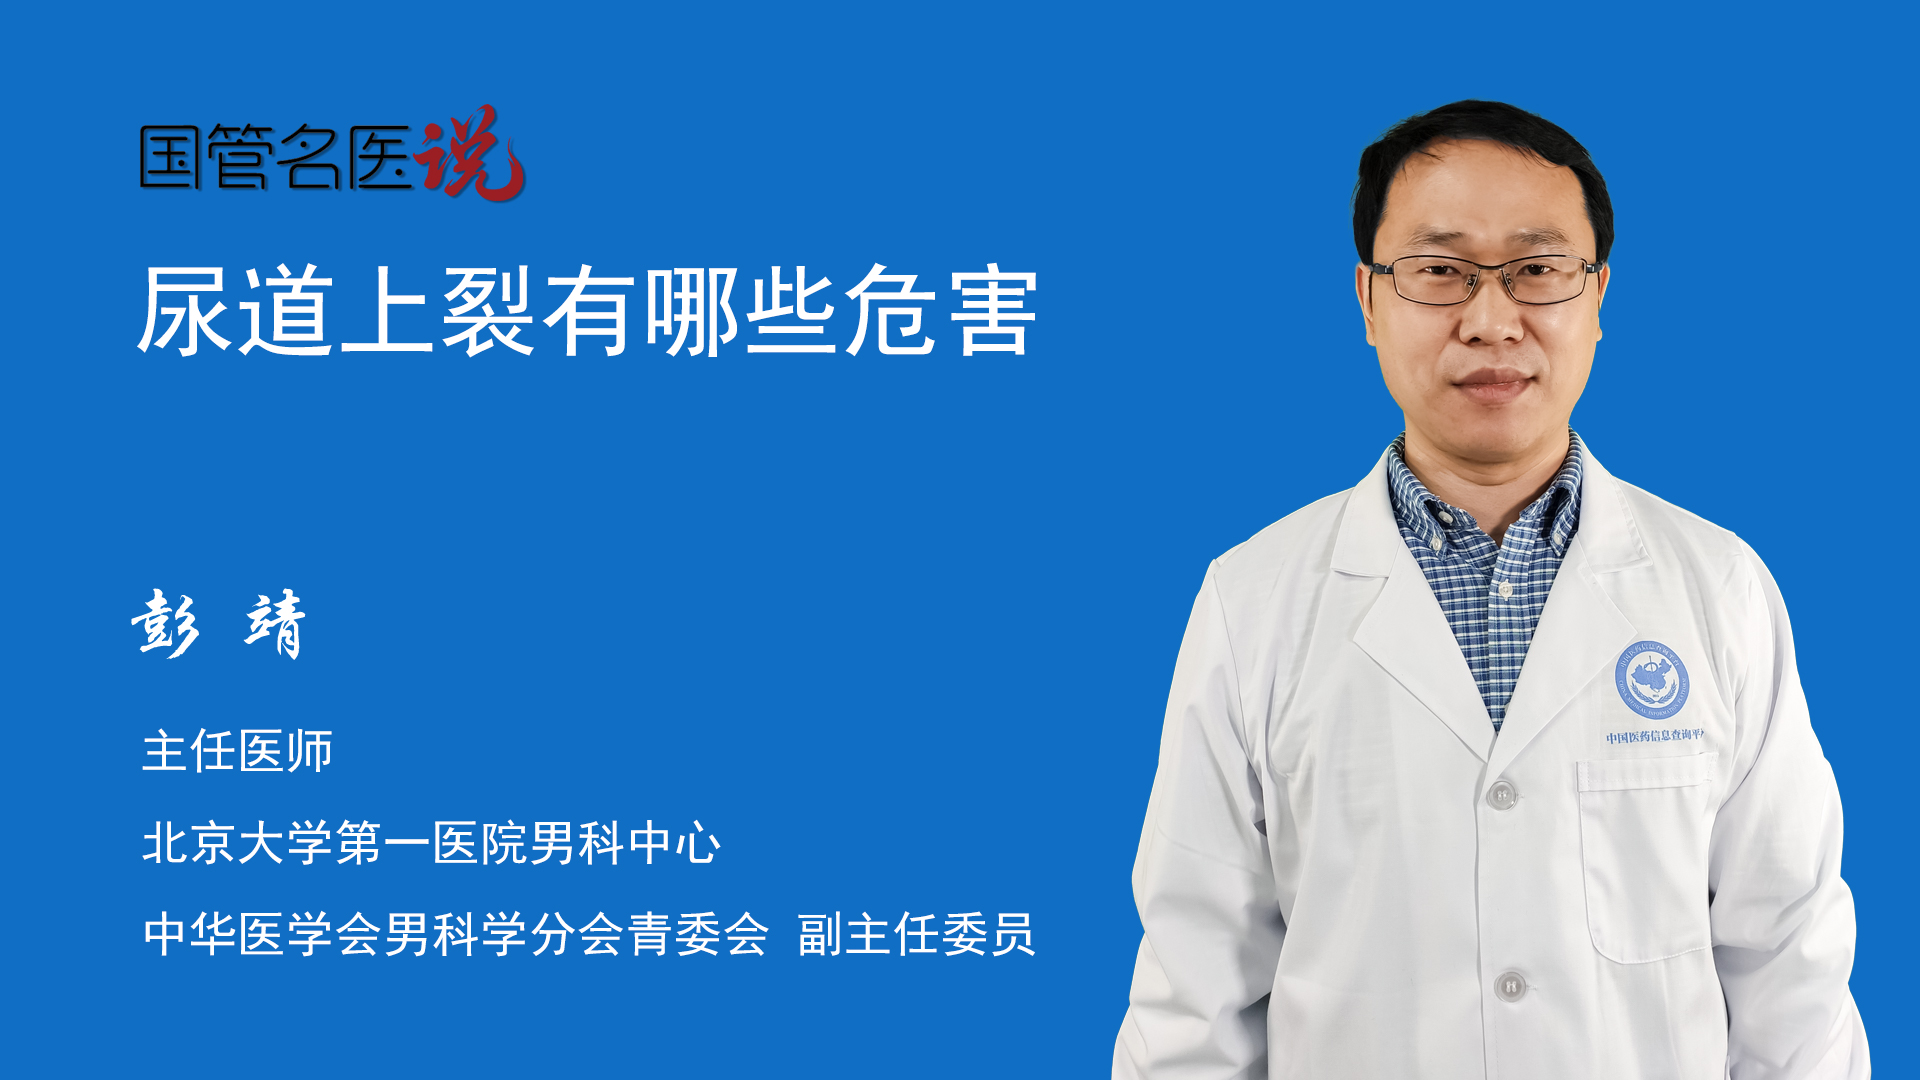 13 岁男童尿道断裂，江西省儿童医院泌尿外科团队成功修复-医院汇-丁香园